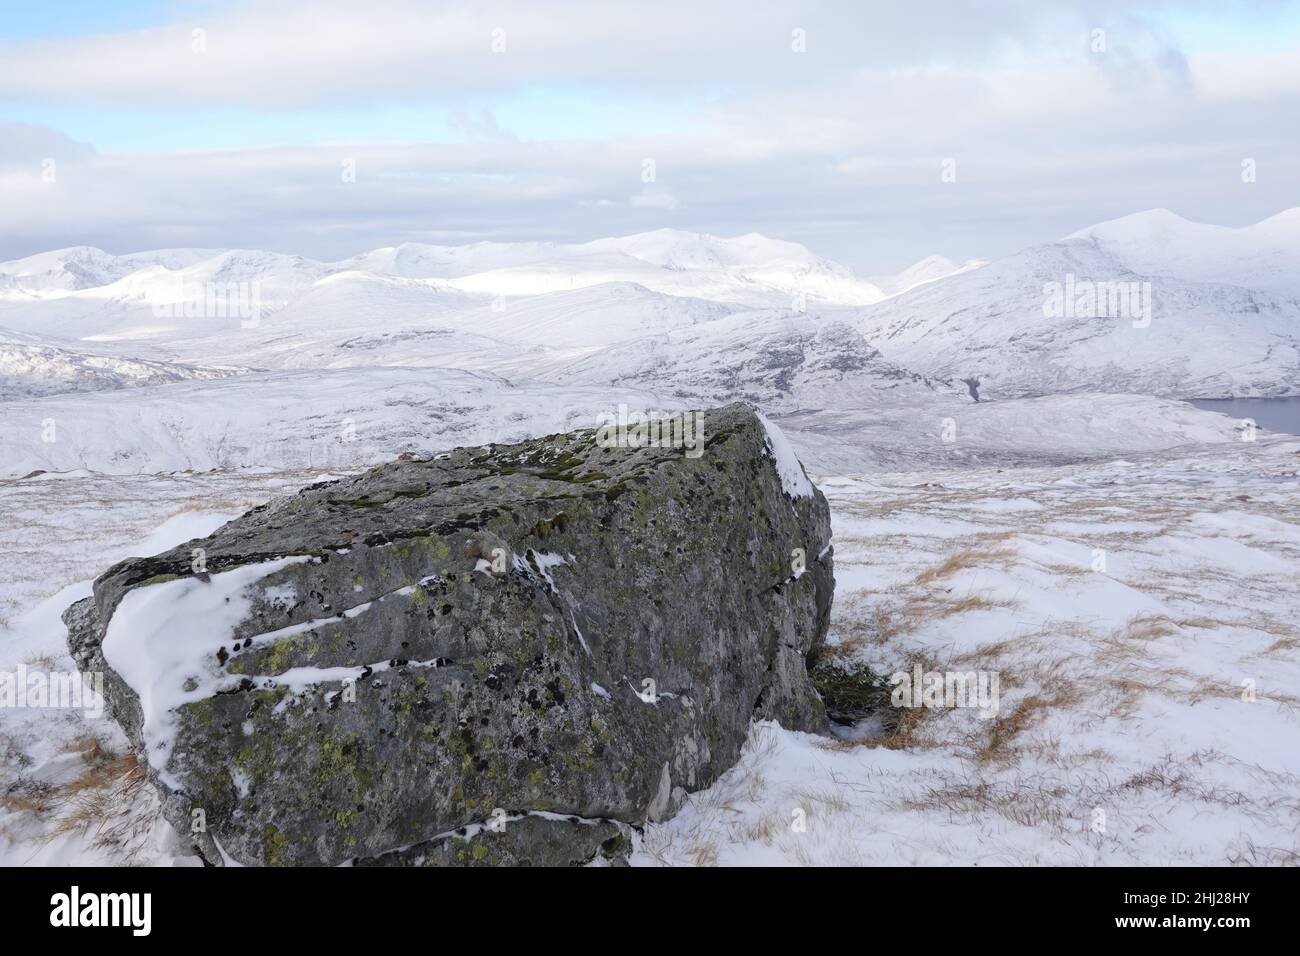 Paisaje invernal escocés mirando hacia la cordillera de los Mamores desde el decente leum Uilleim frente a la estación de Corrour, Tierras Altas de Escocia Foto de stock